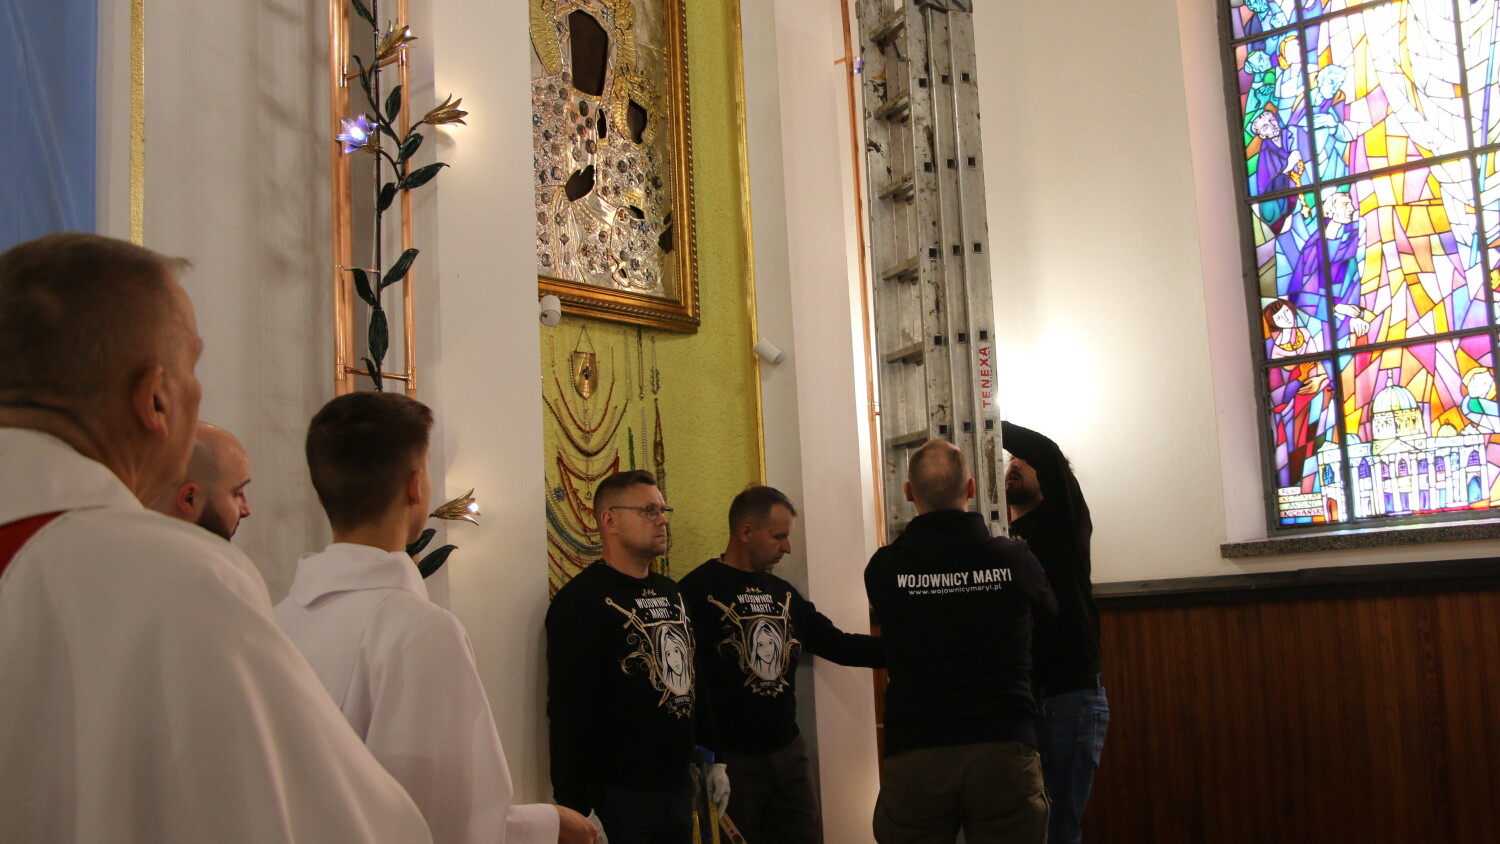 Zawieszenie obrazu w kościele Matki Boskiej Częstochowskiej.mp4